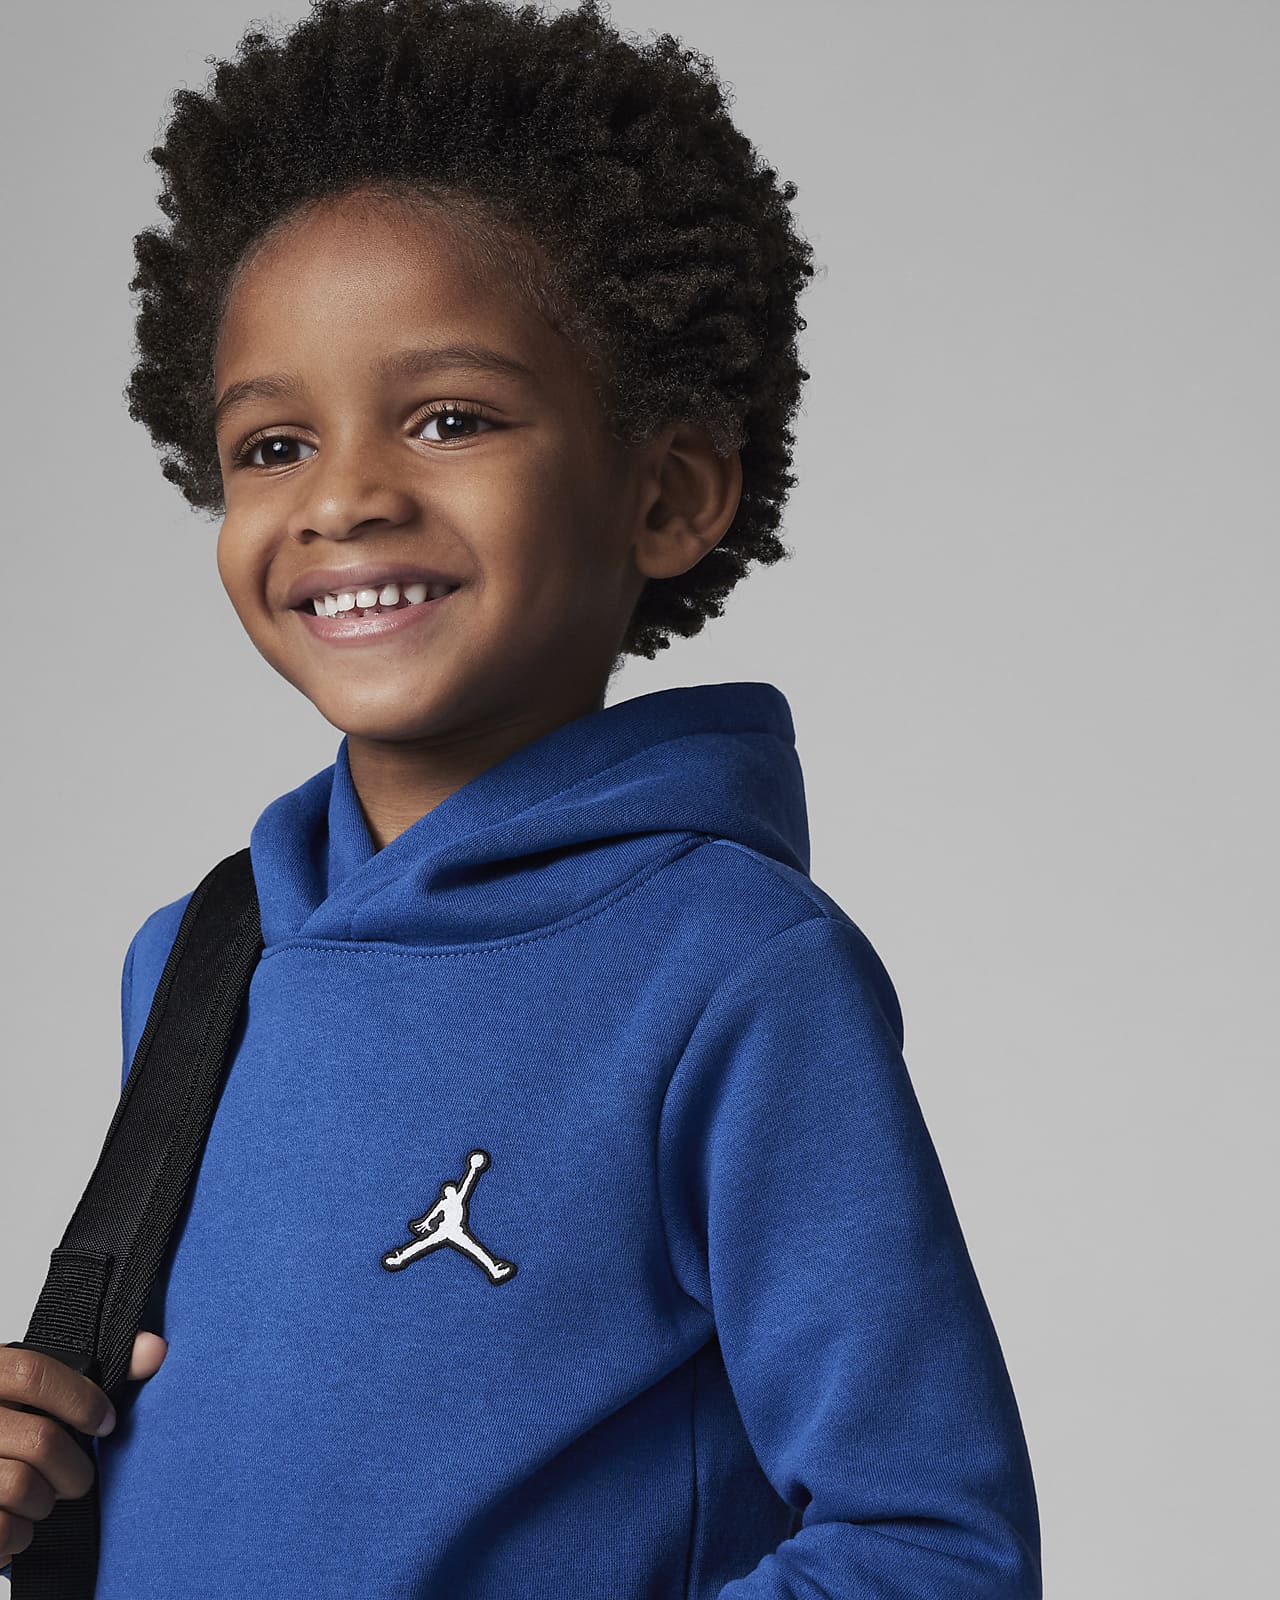 Niño/a Jordan Sudaderas con y sin capucha. Nike ES